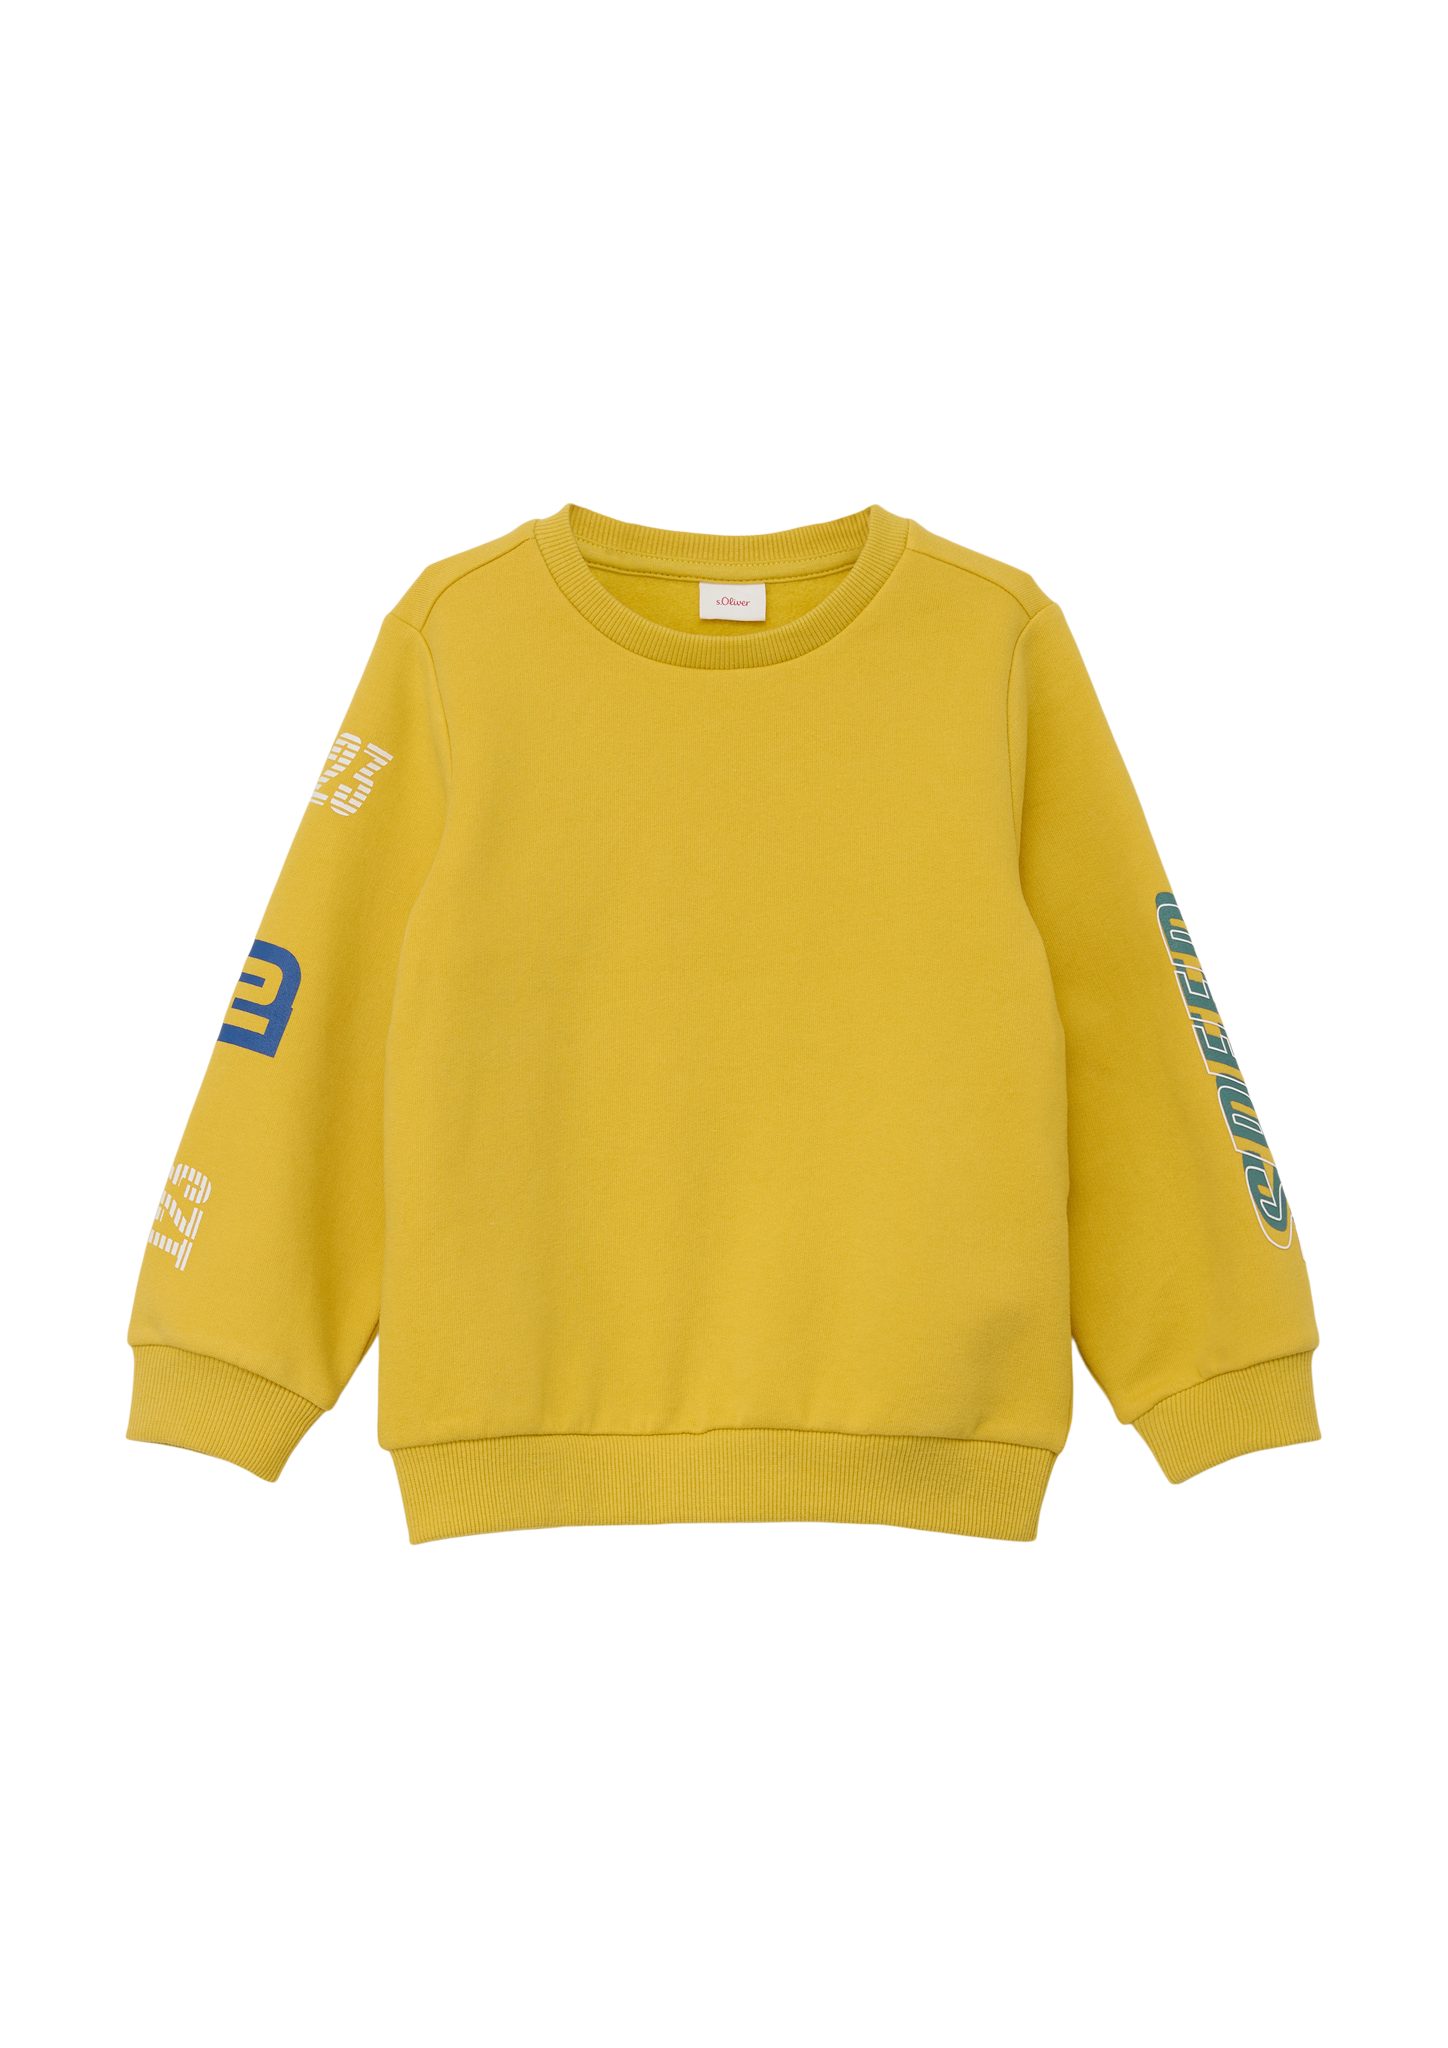 s.Oliver Sweatshirt Sweatshirt aus Baumwollmix gelb